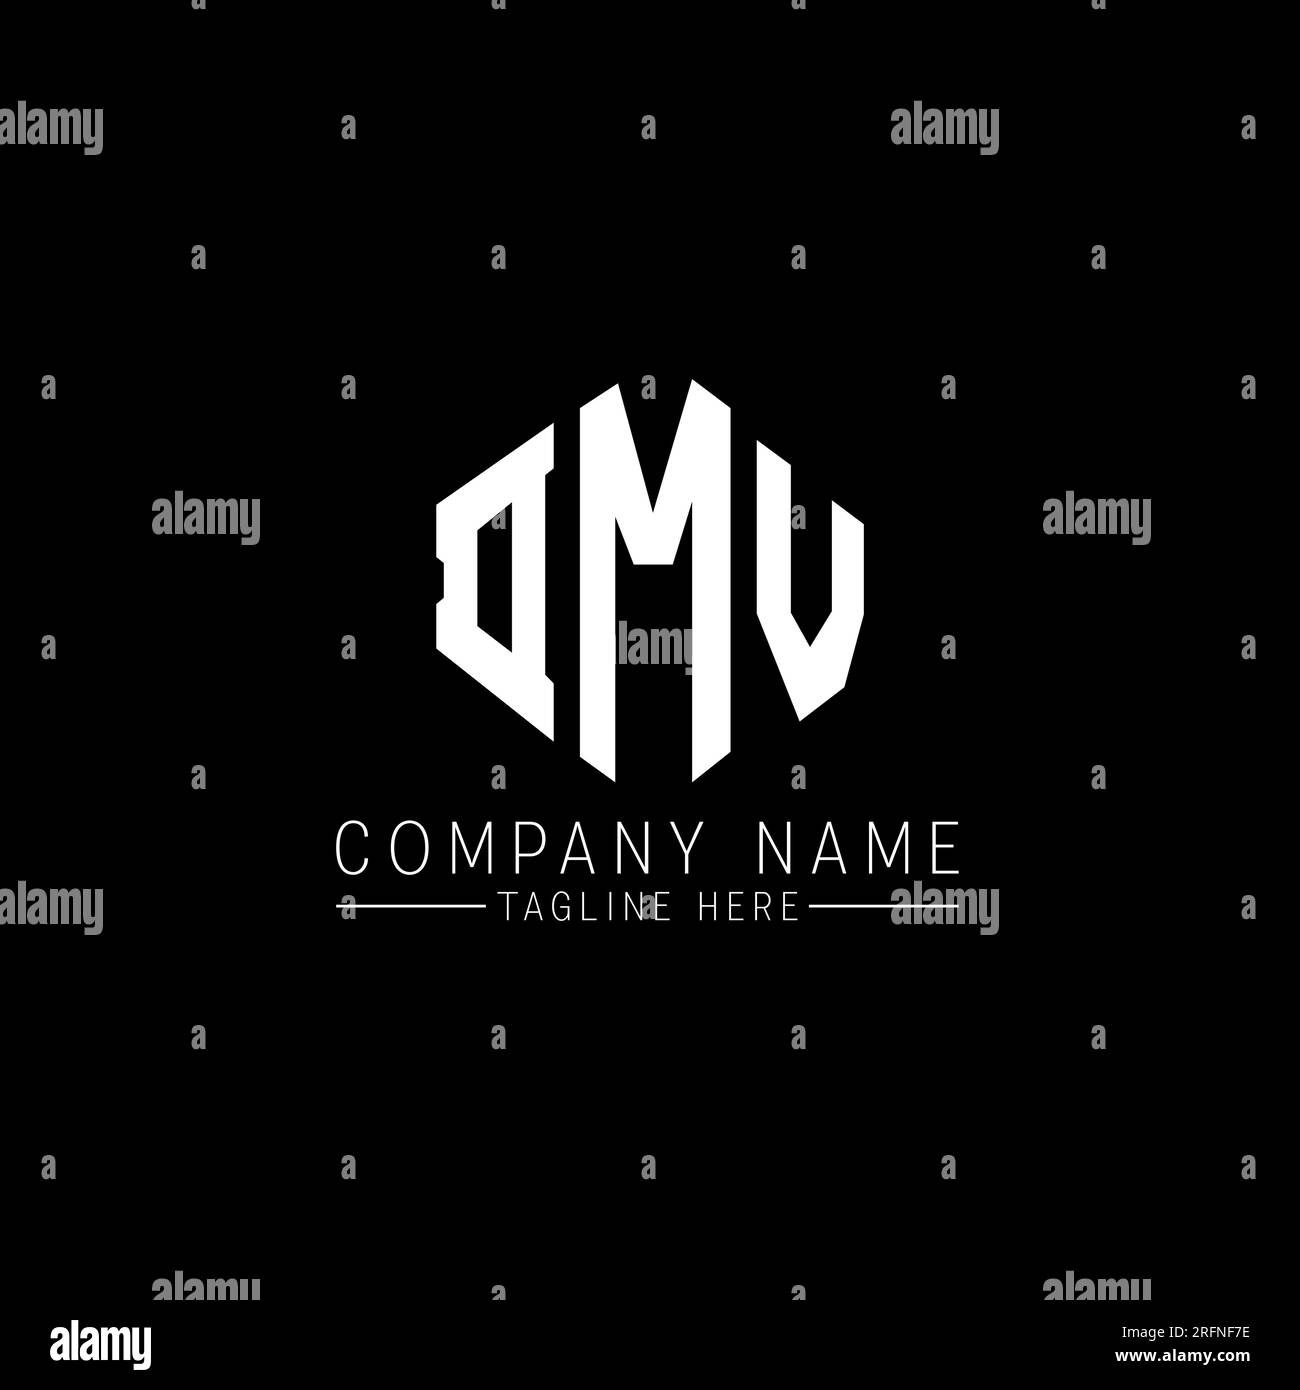 DMW, DMW logo, DMW letter, DMW polygon, DMW hexagon, DMW cube, DMW vector, DMW font, DMW logo design, DMW monogram, DMW technology logo, DMW symbol, D Stock Vector